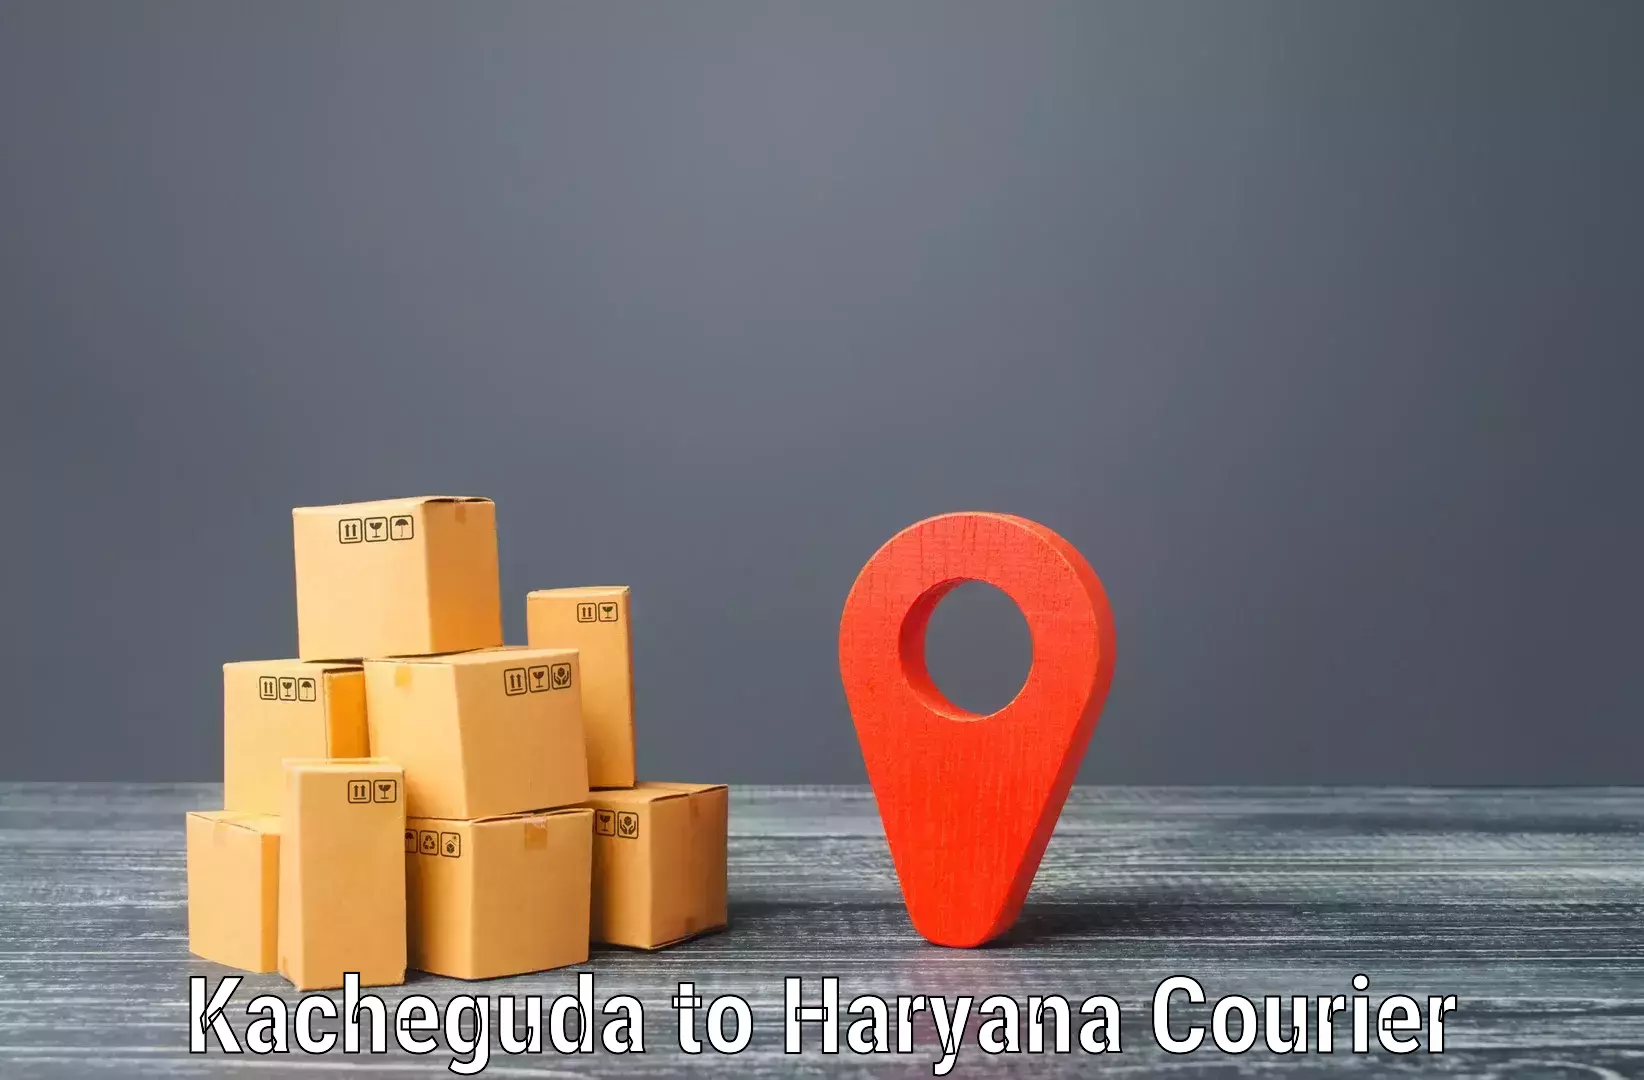 Nationwide shipping capabilities Kacheguda to Gurgaon